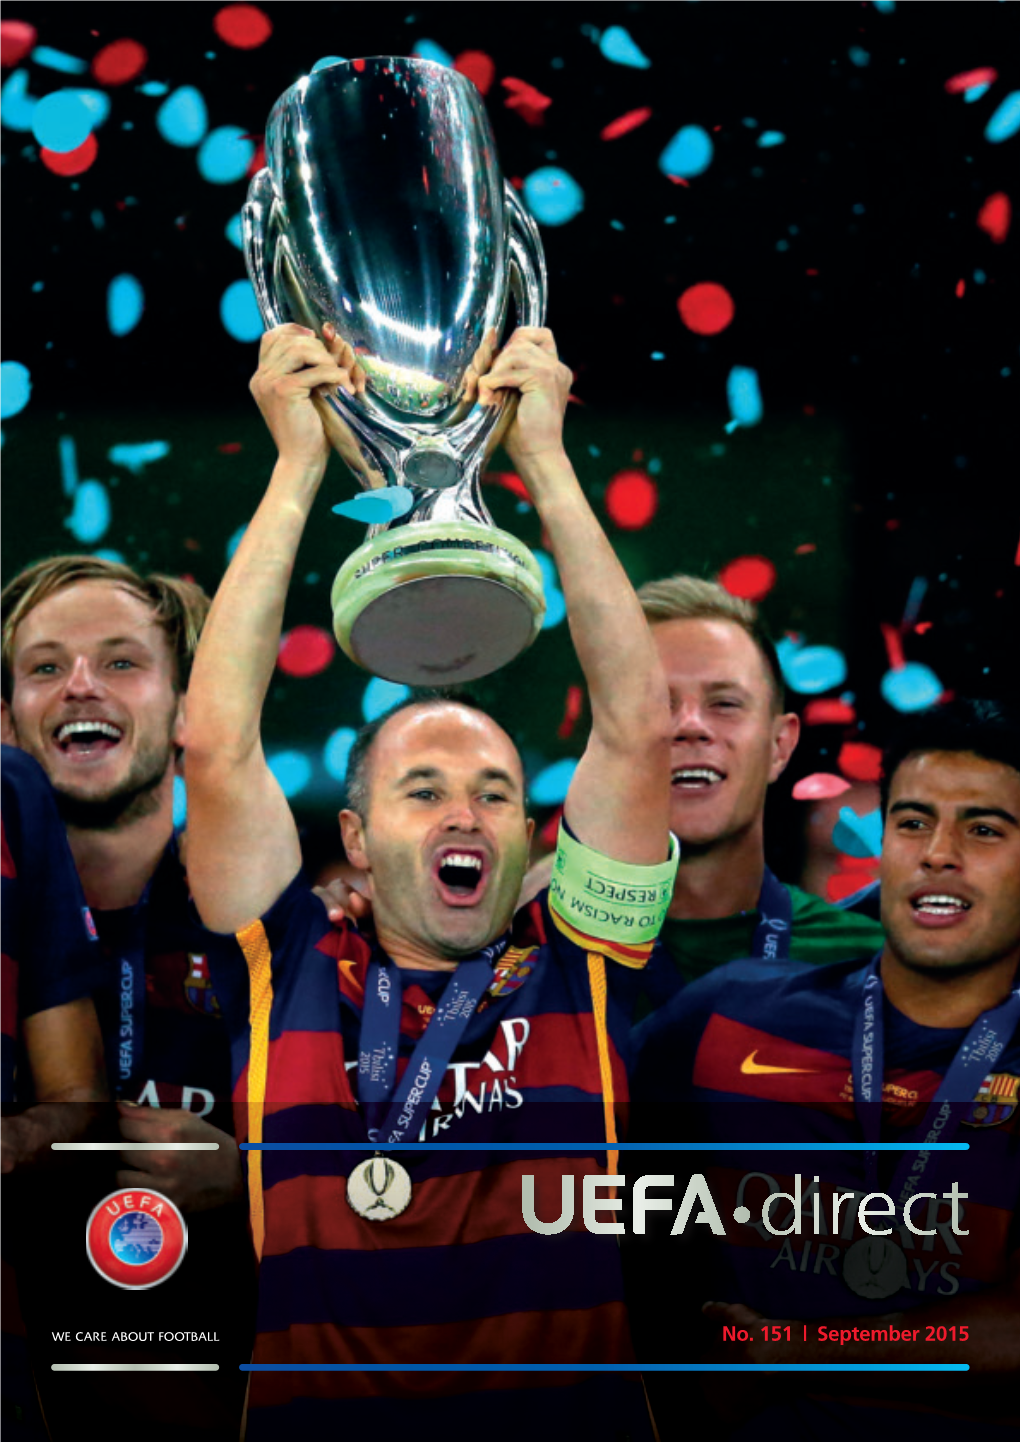 UEFA"Direct #151 (01.09.2015)